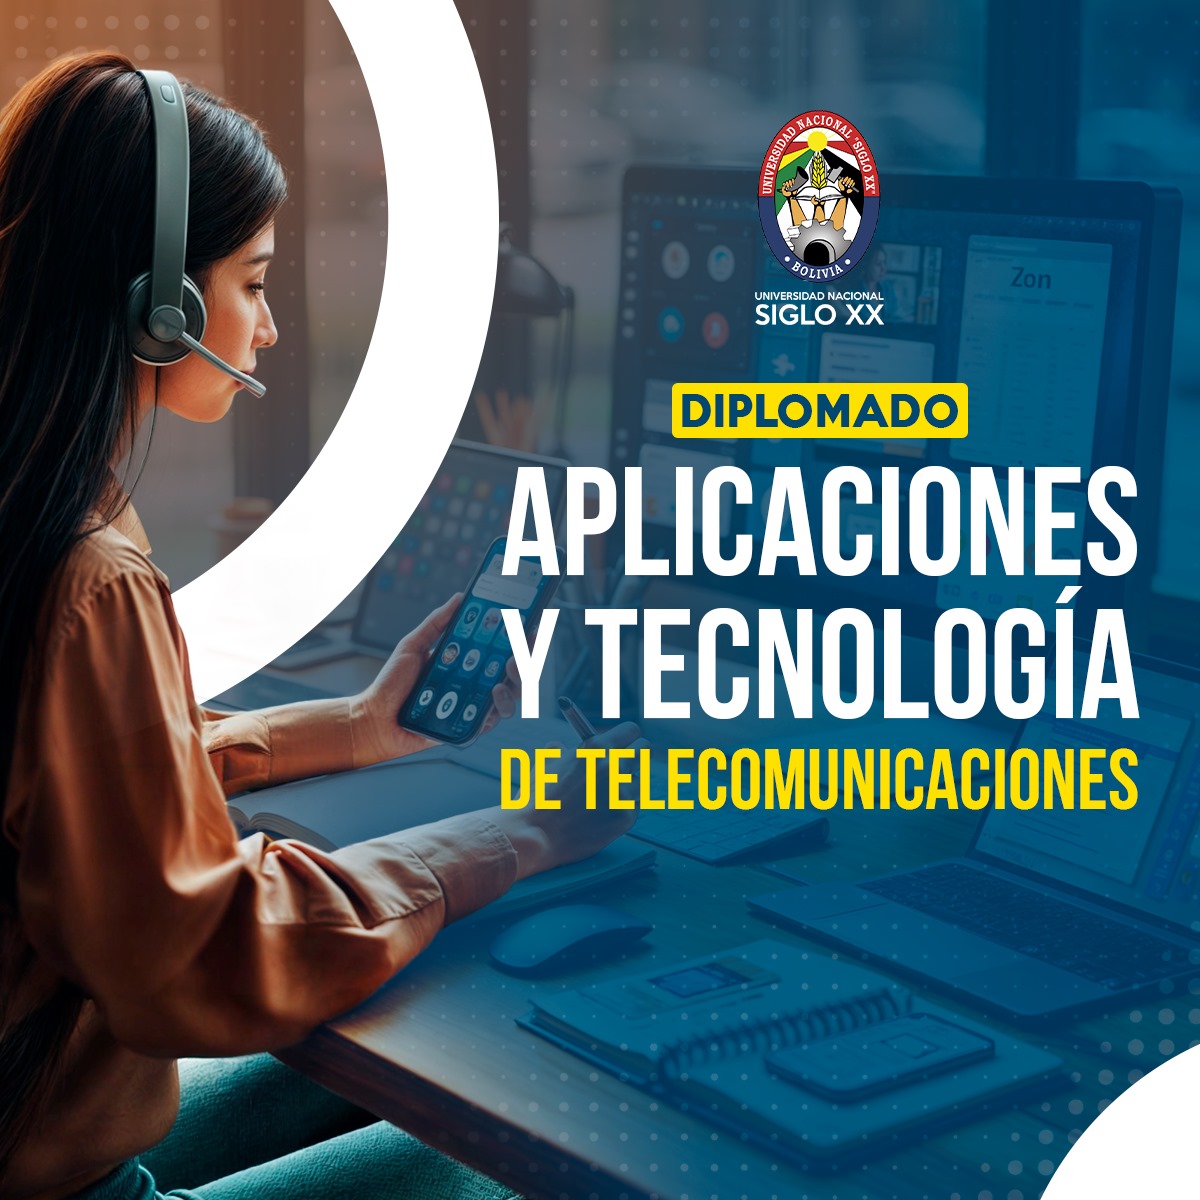 Diplomado DIPLOMADO EN APLICACIONES Y TECNOLOGÍA DE TELECOMUNICACIONES